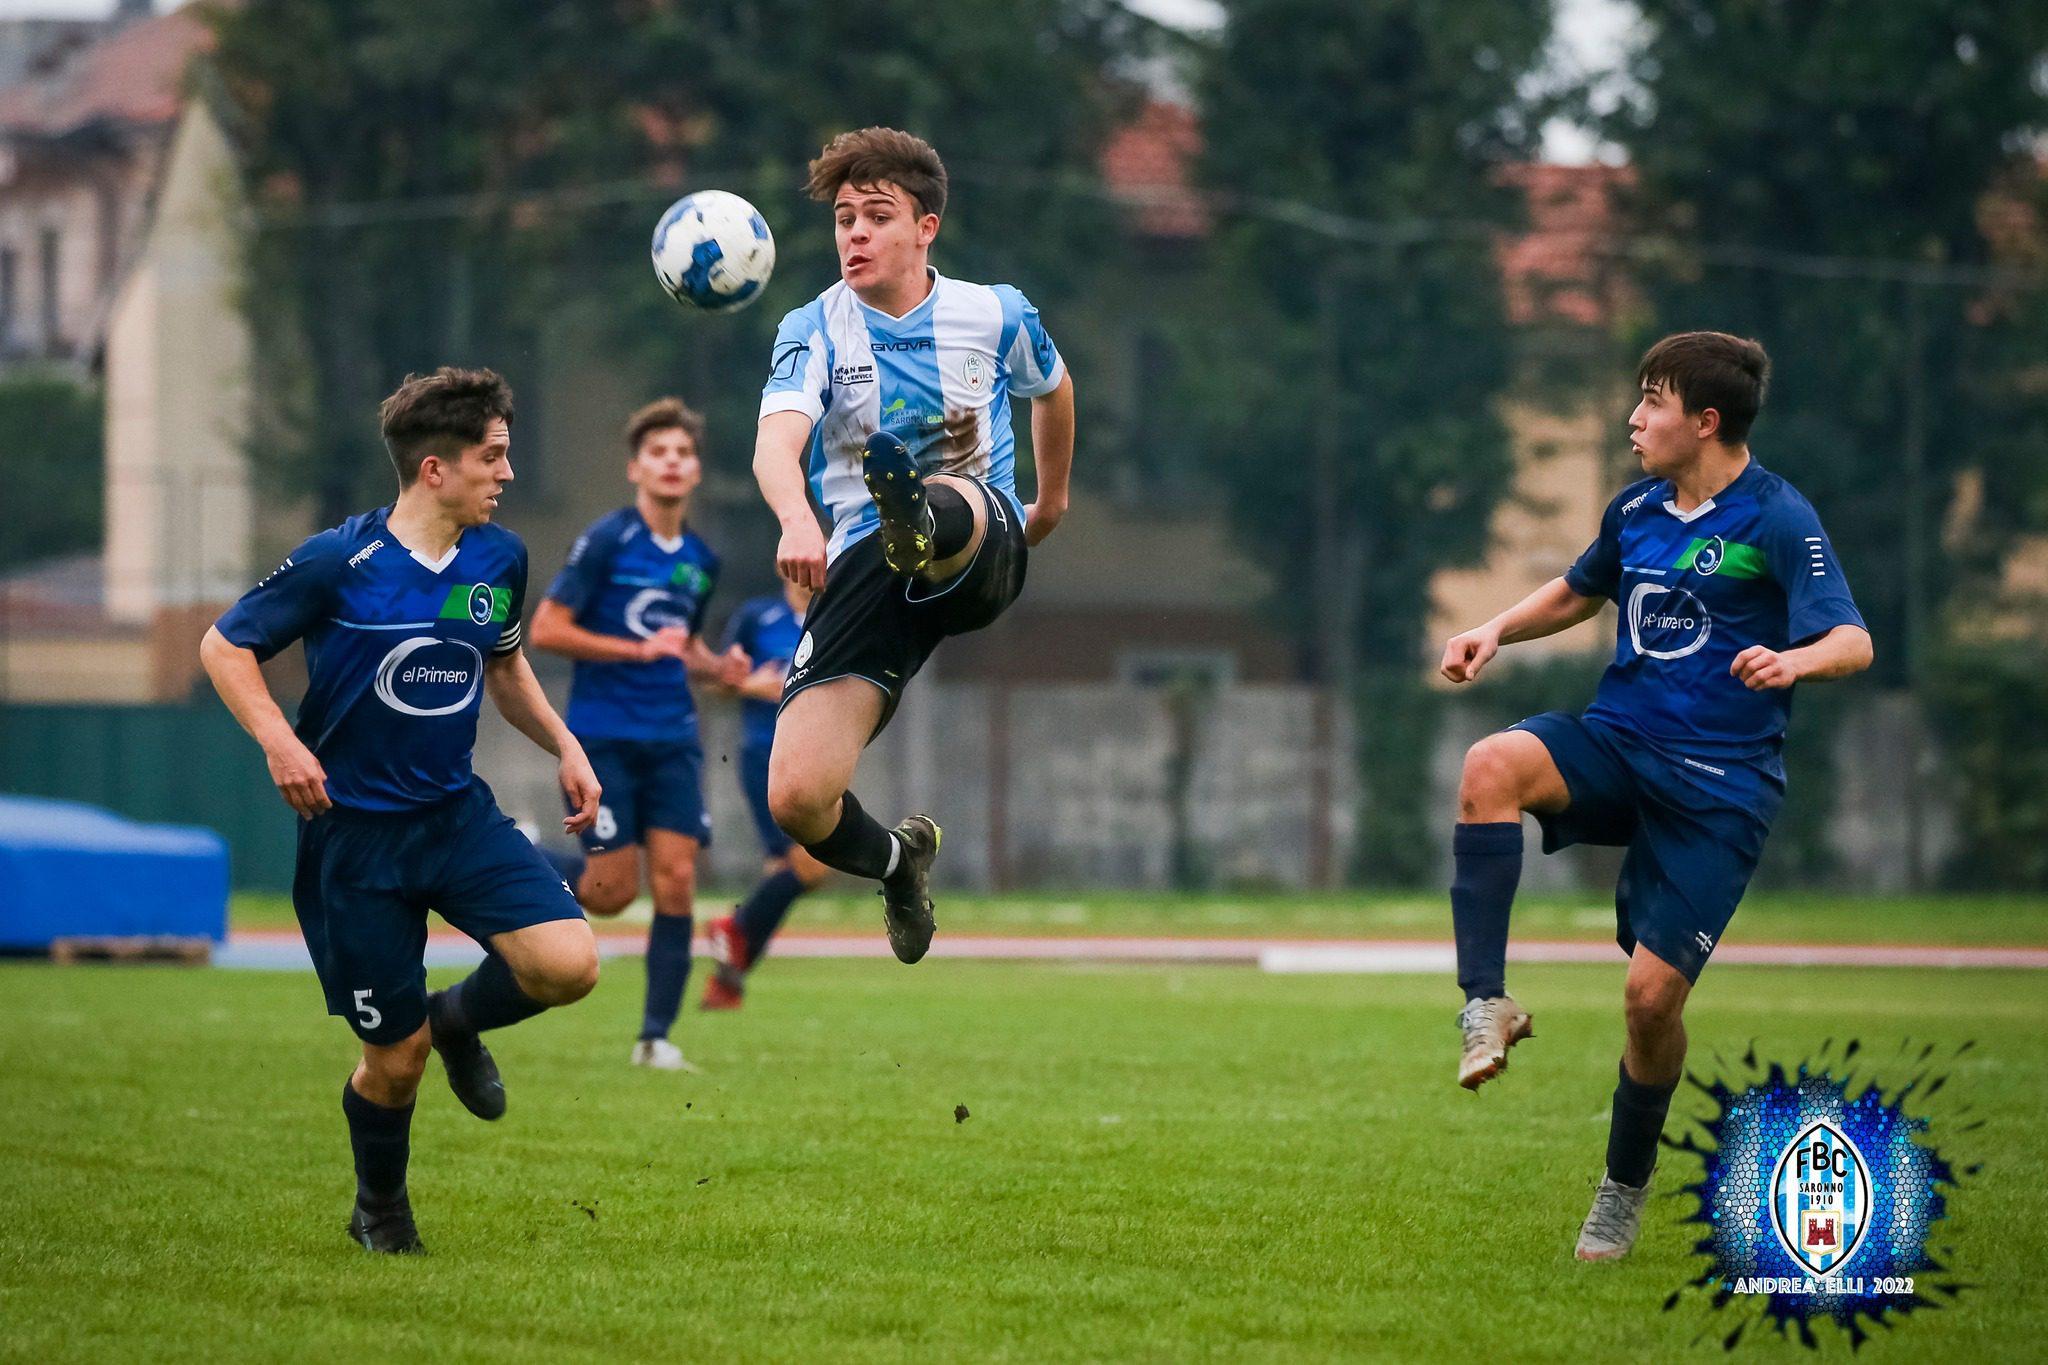 Calcio, oggi torna il campionato juniores: Fbc Saronno al Colombo Gianetti